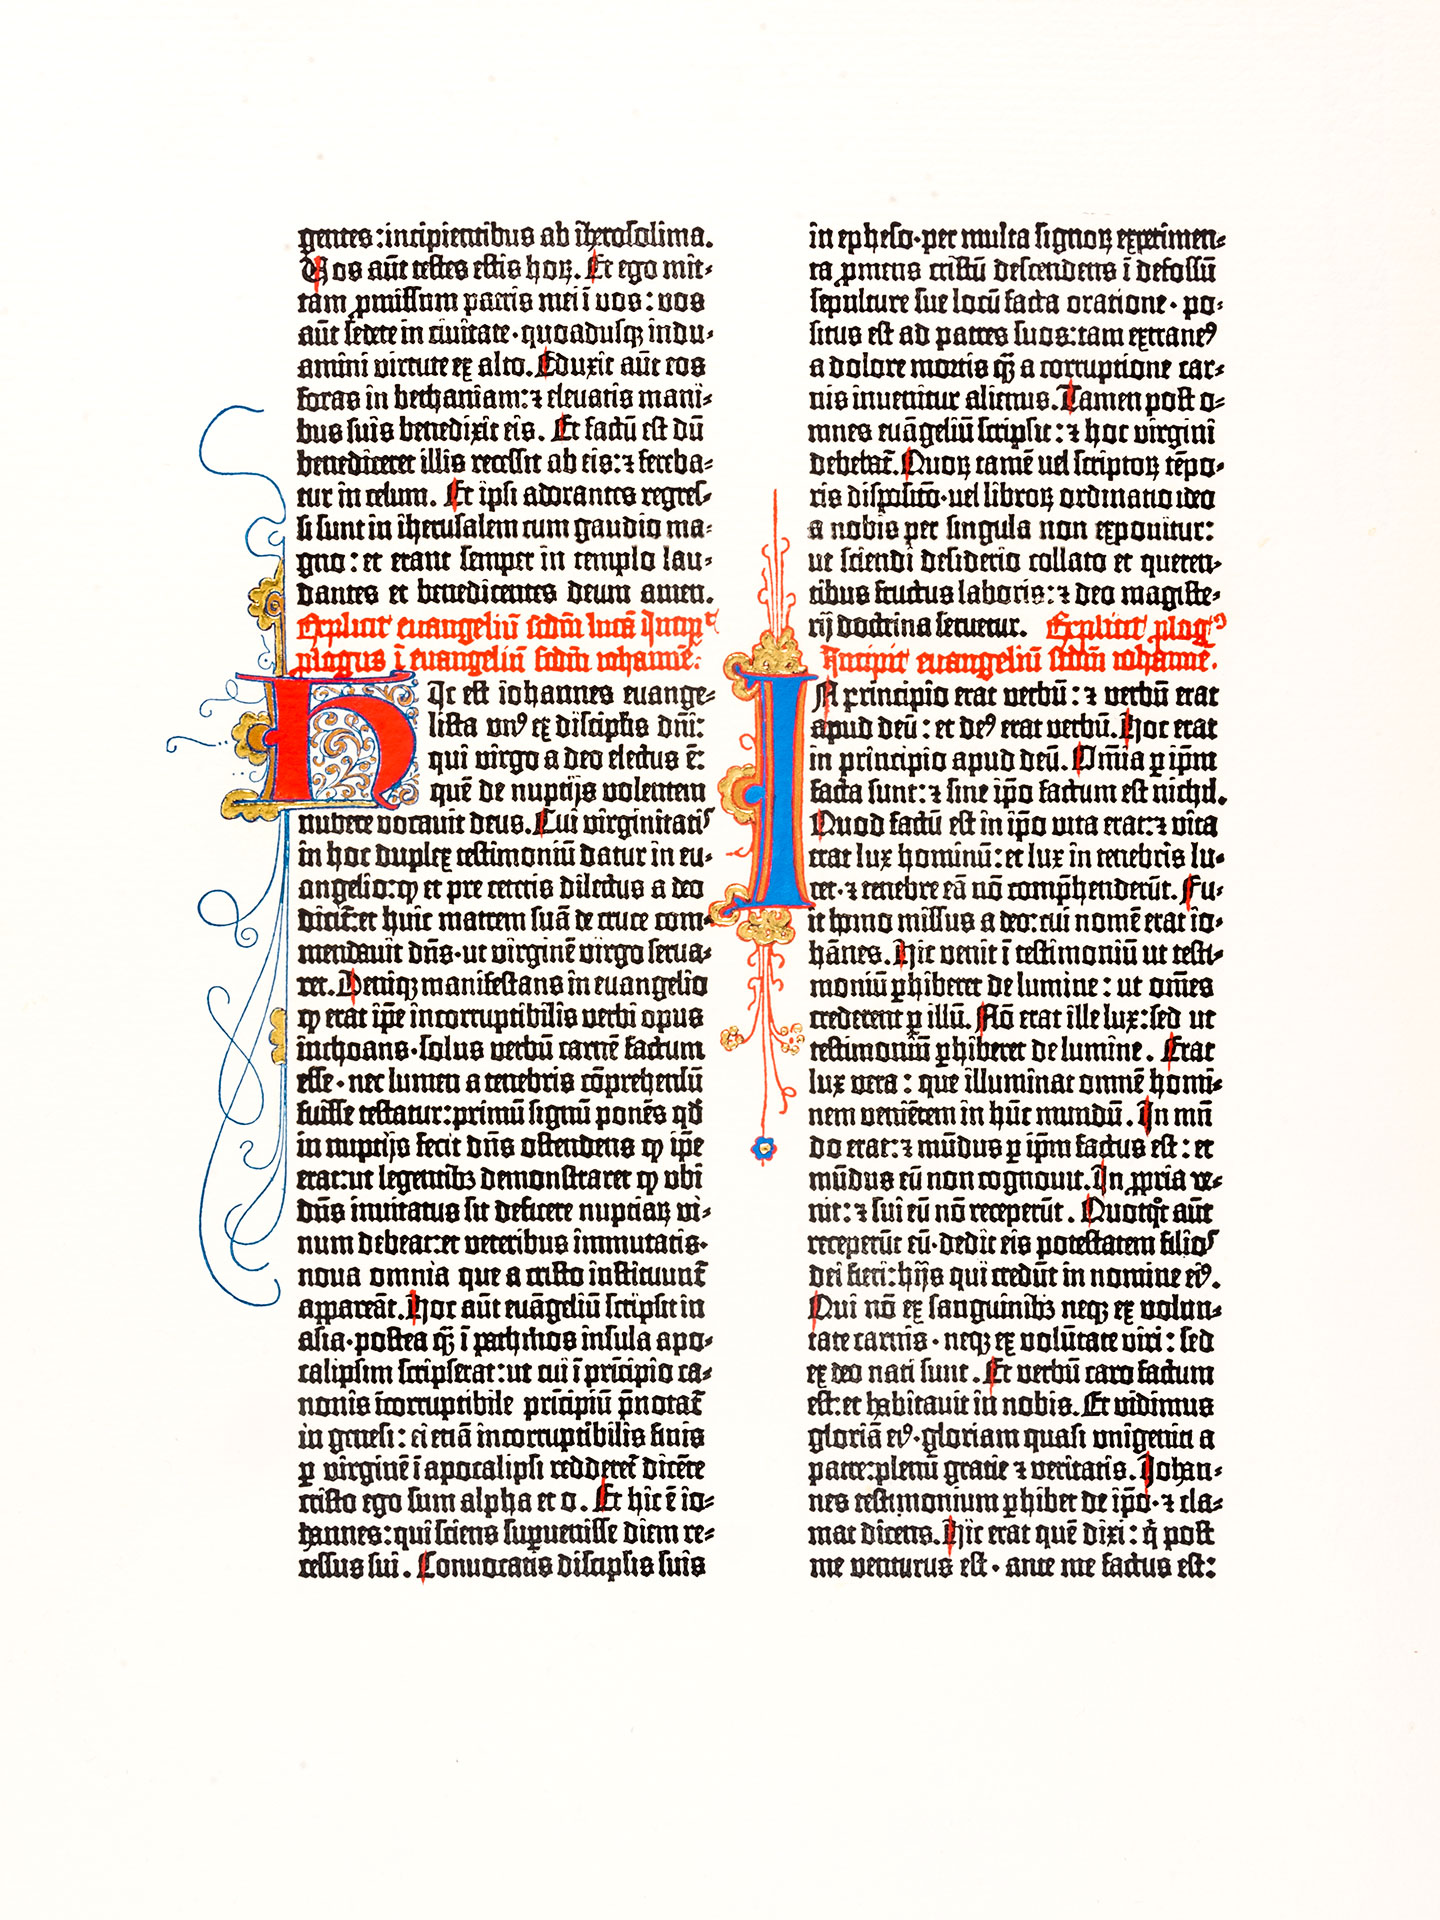 Das Johannes-Evangelium. Pressendruck Gutenberg-Bibel